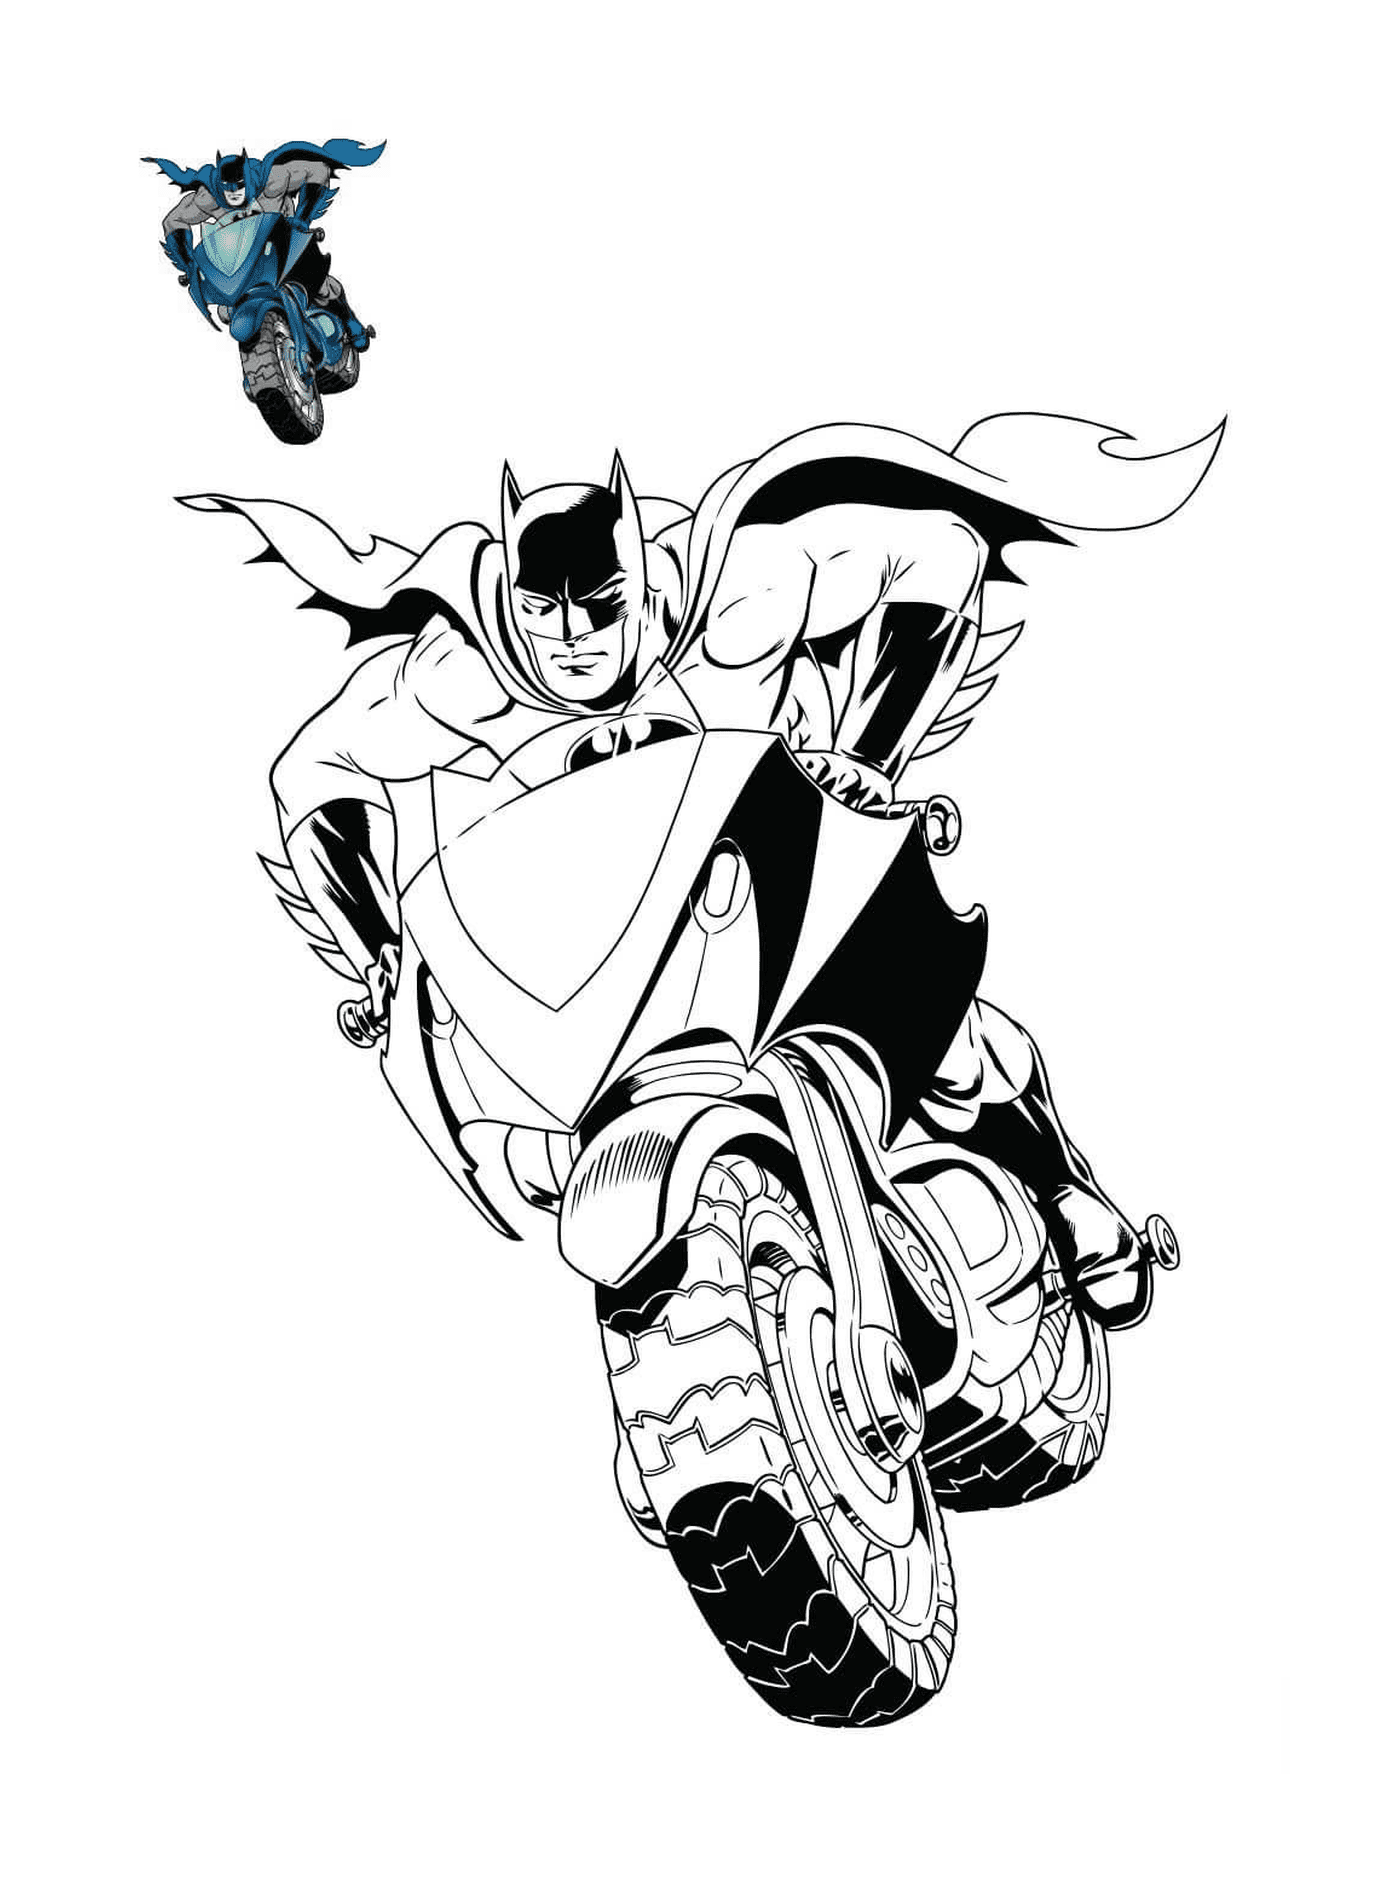   Batman sur une moto de DC Comics 